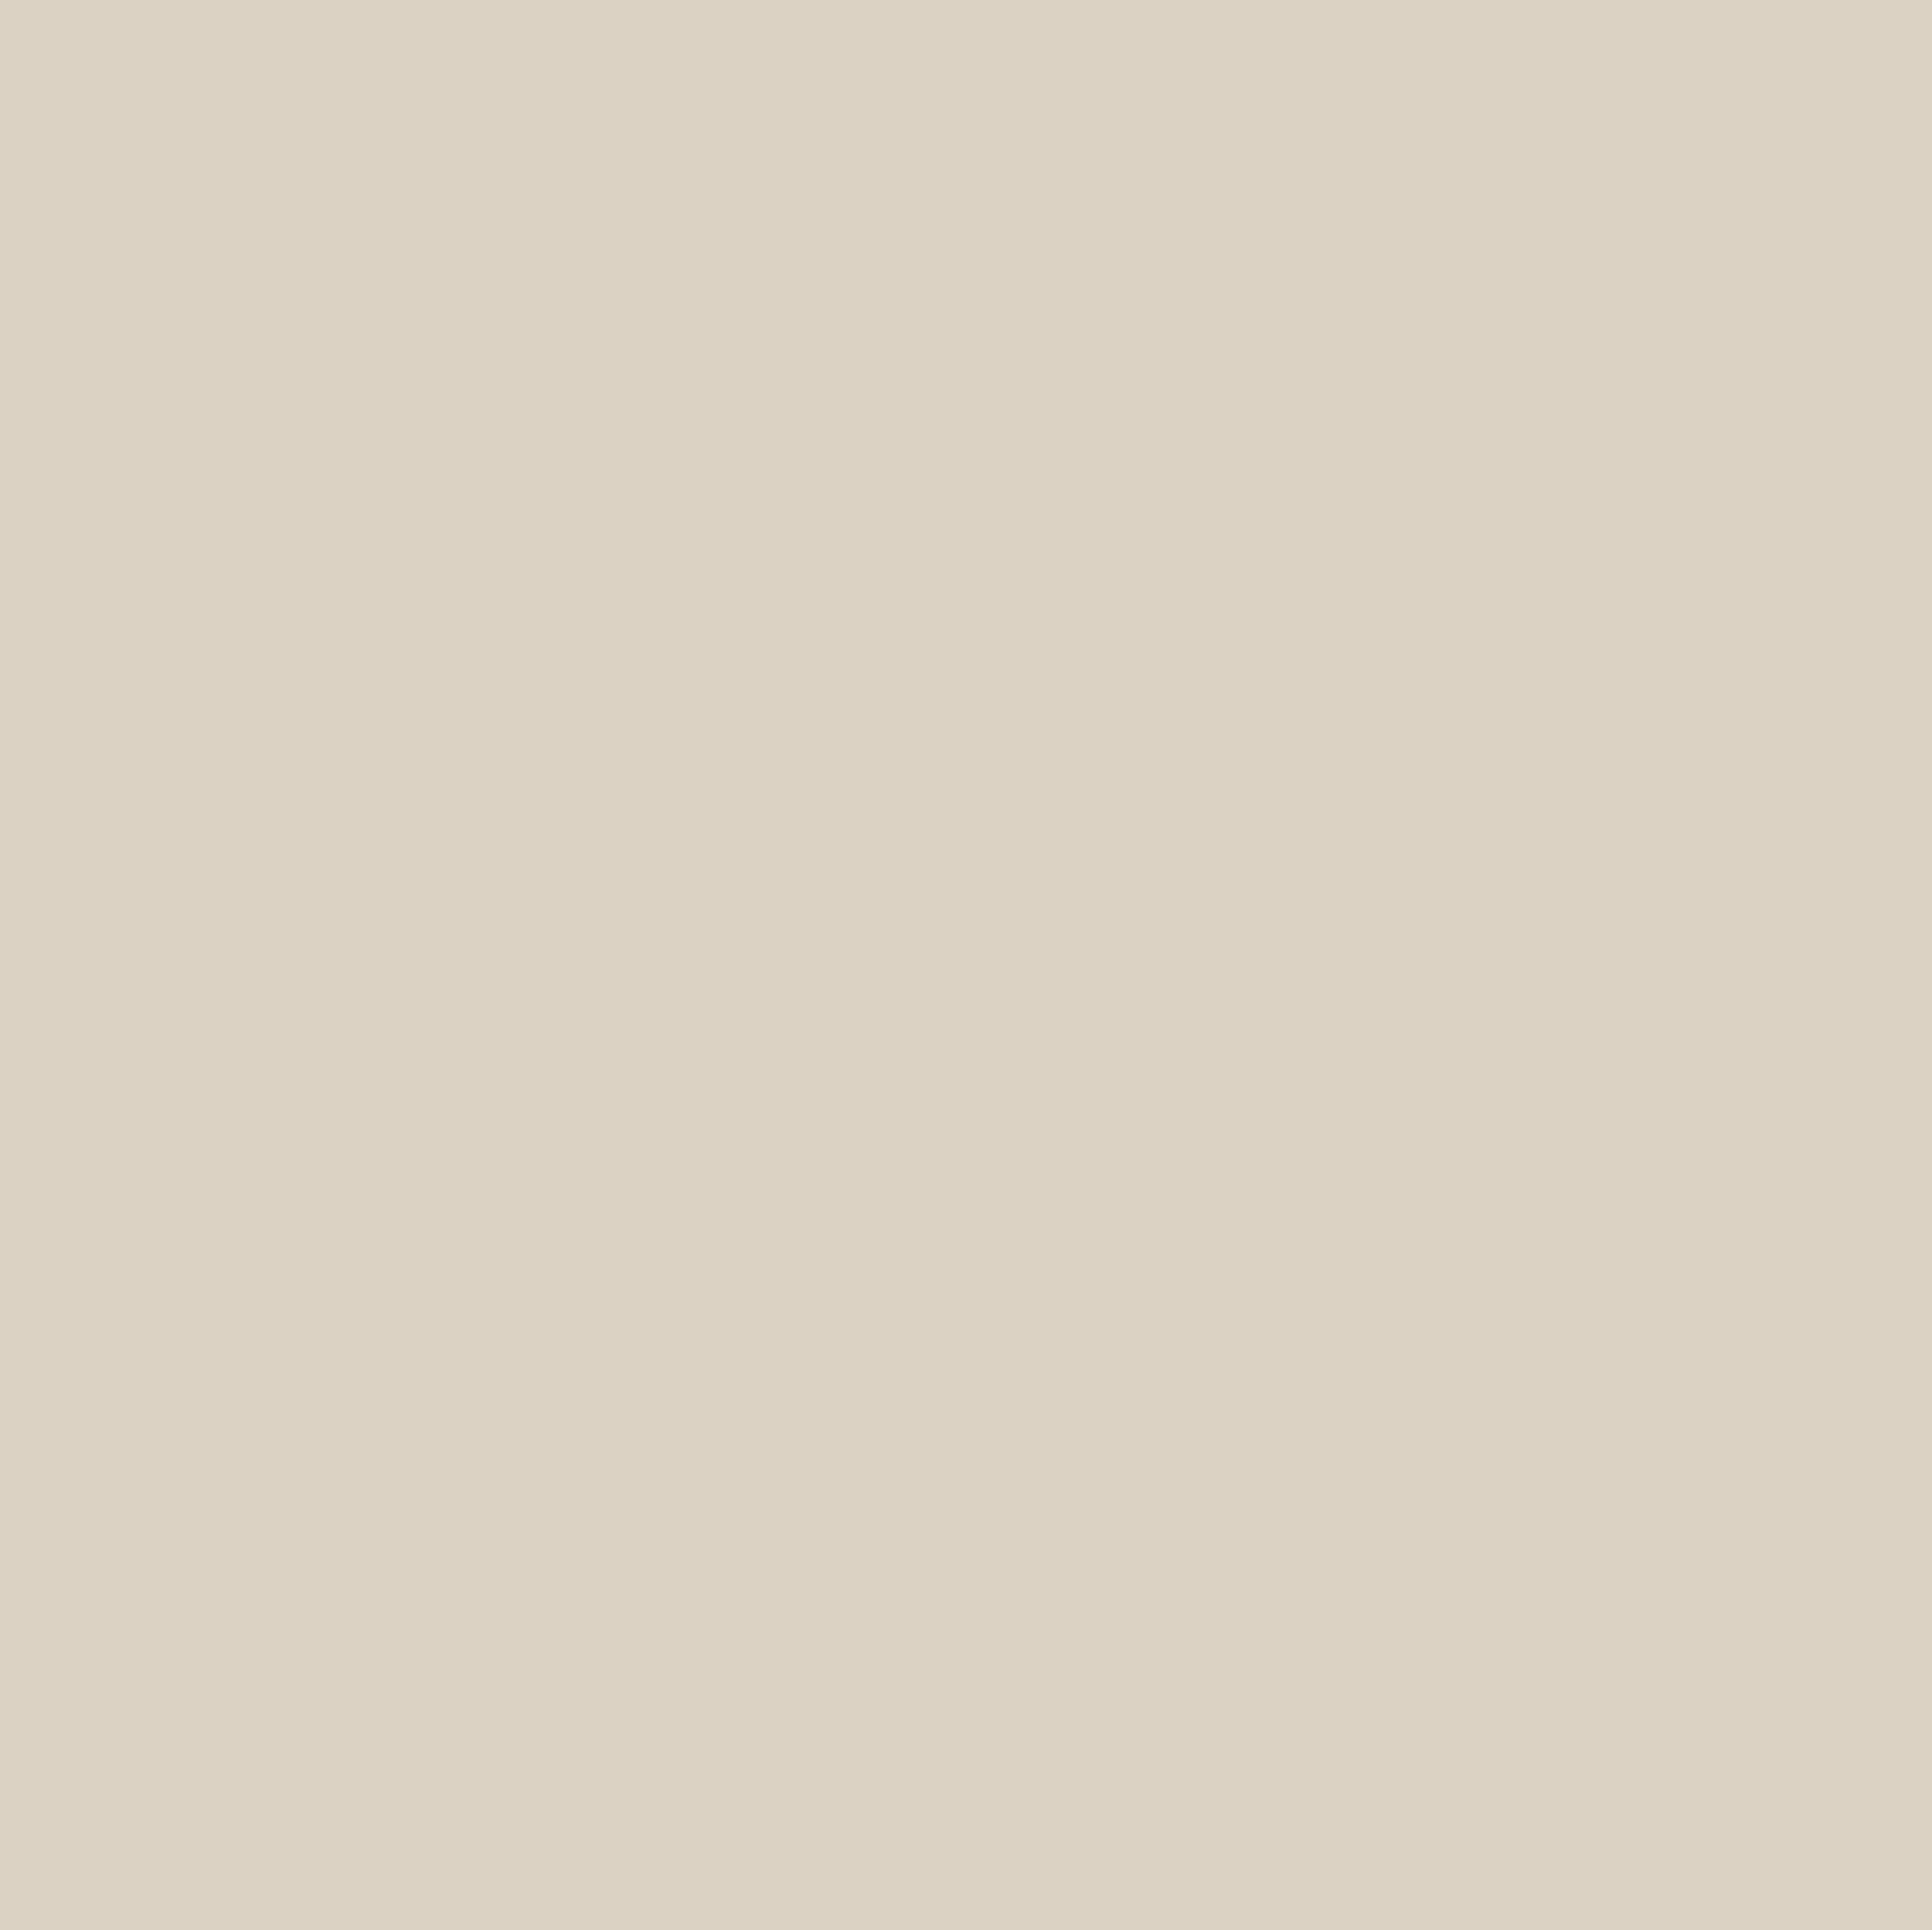 Казимир Малевич. Белое на белом. 1918. Нью-Йоркский музей современного искусства, Нью-Йорк